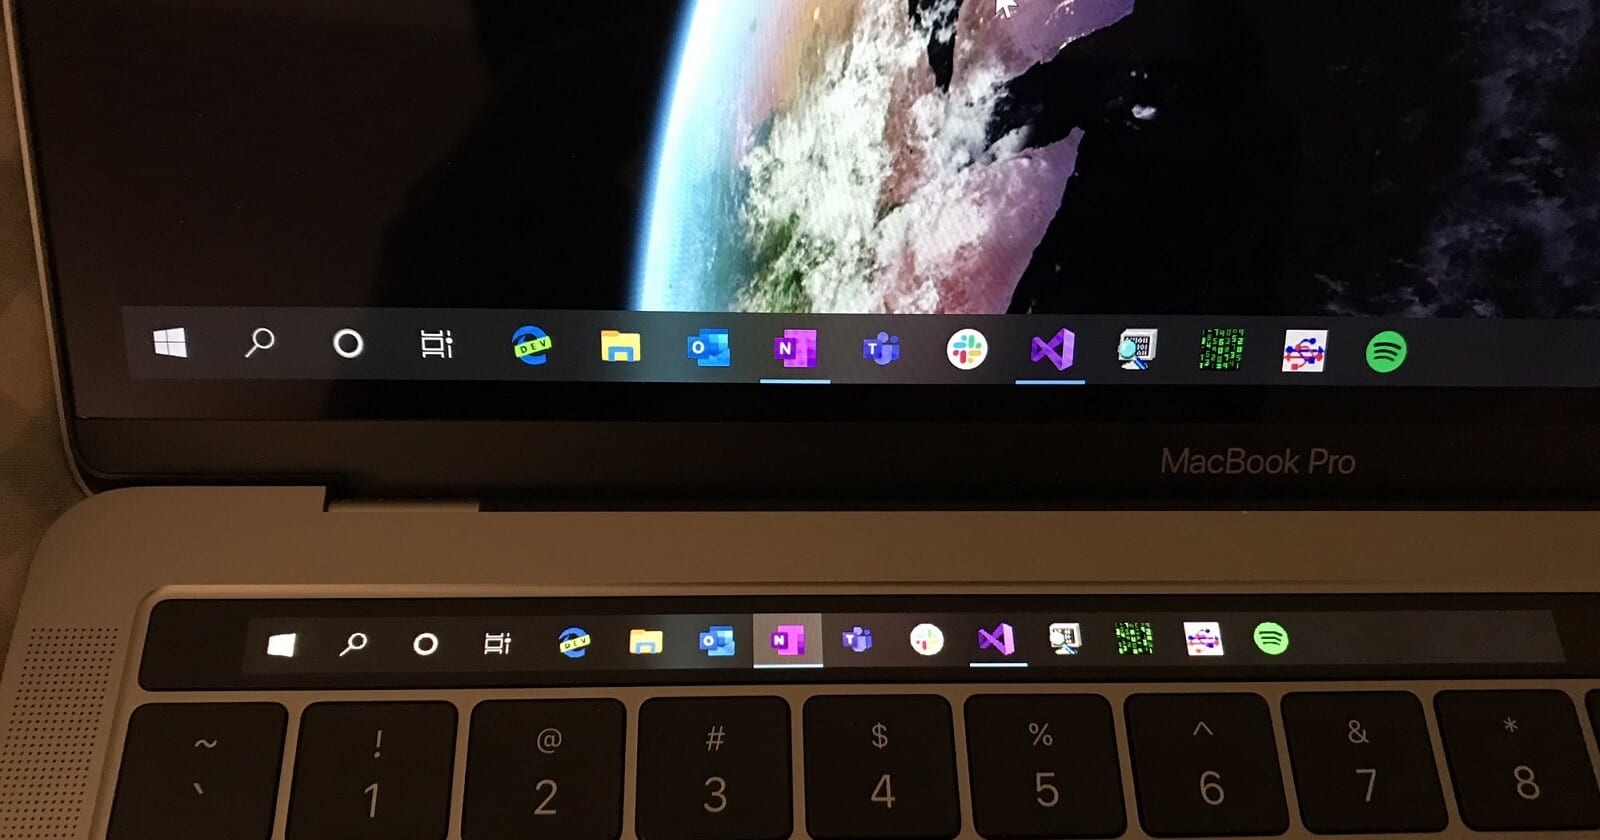 MacBook Pro换用Windows 10后 Touch Bar能当显示副屏了